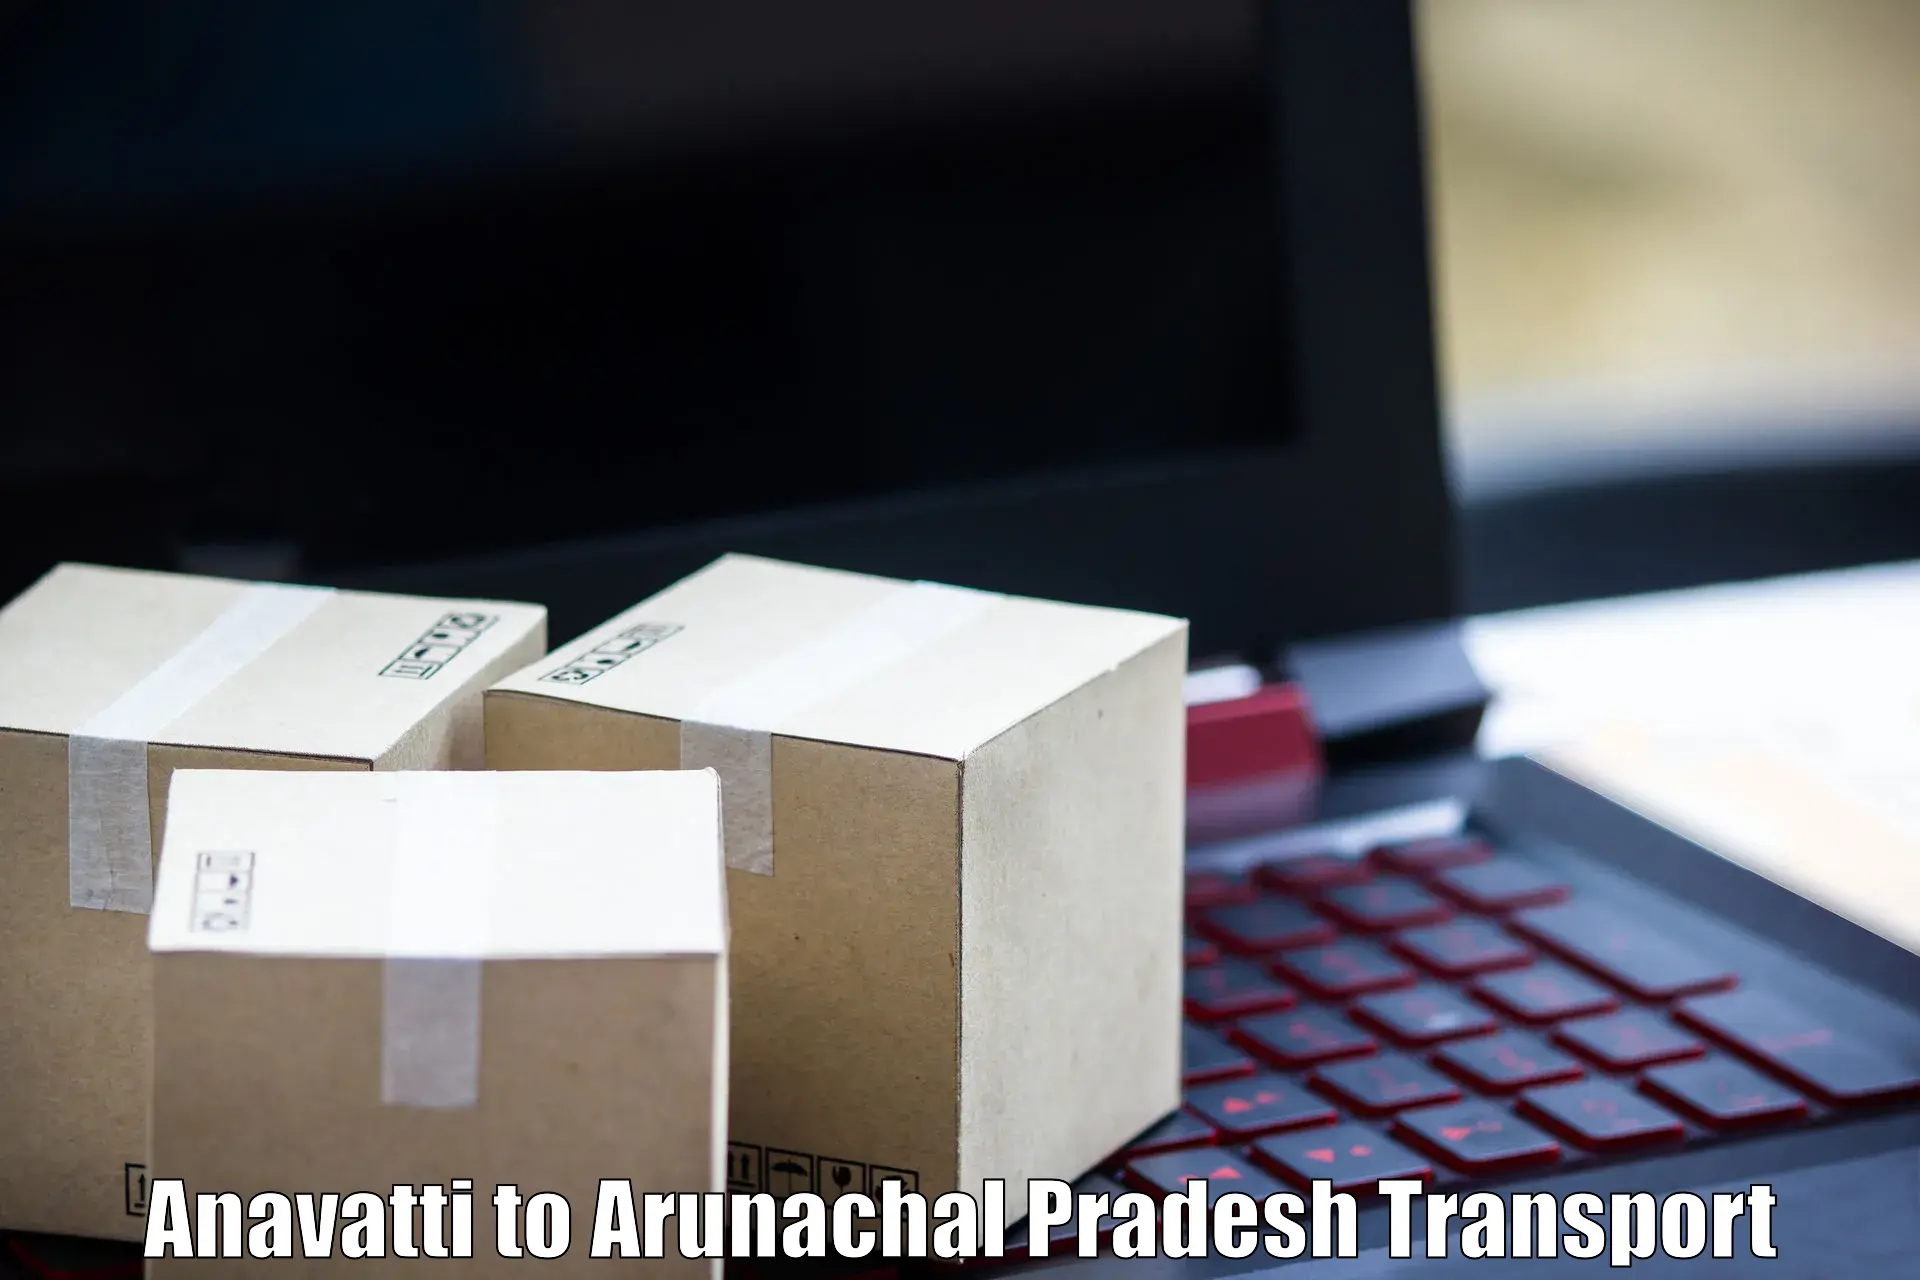 Domestic transport services Anavatti to Tirap